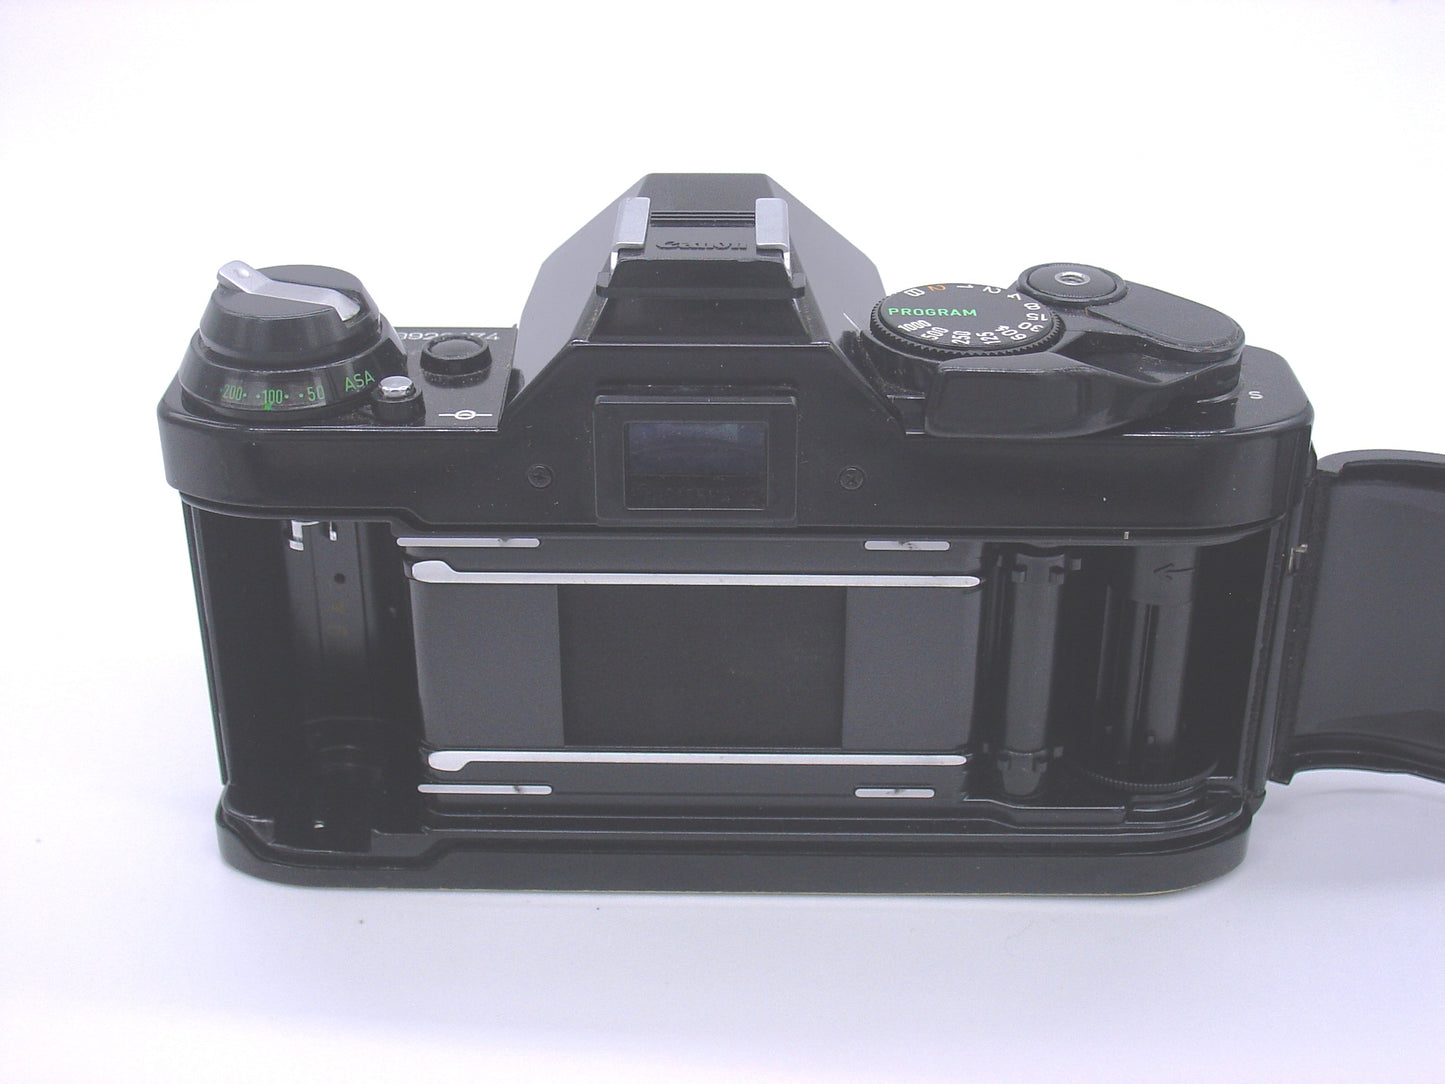 Canon AE-1 Program SLR camera - silver or black